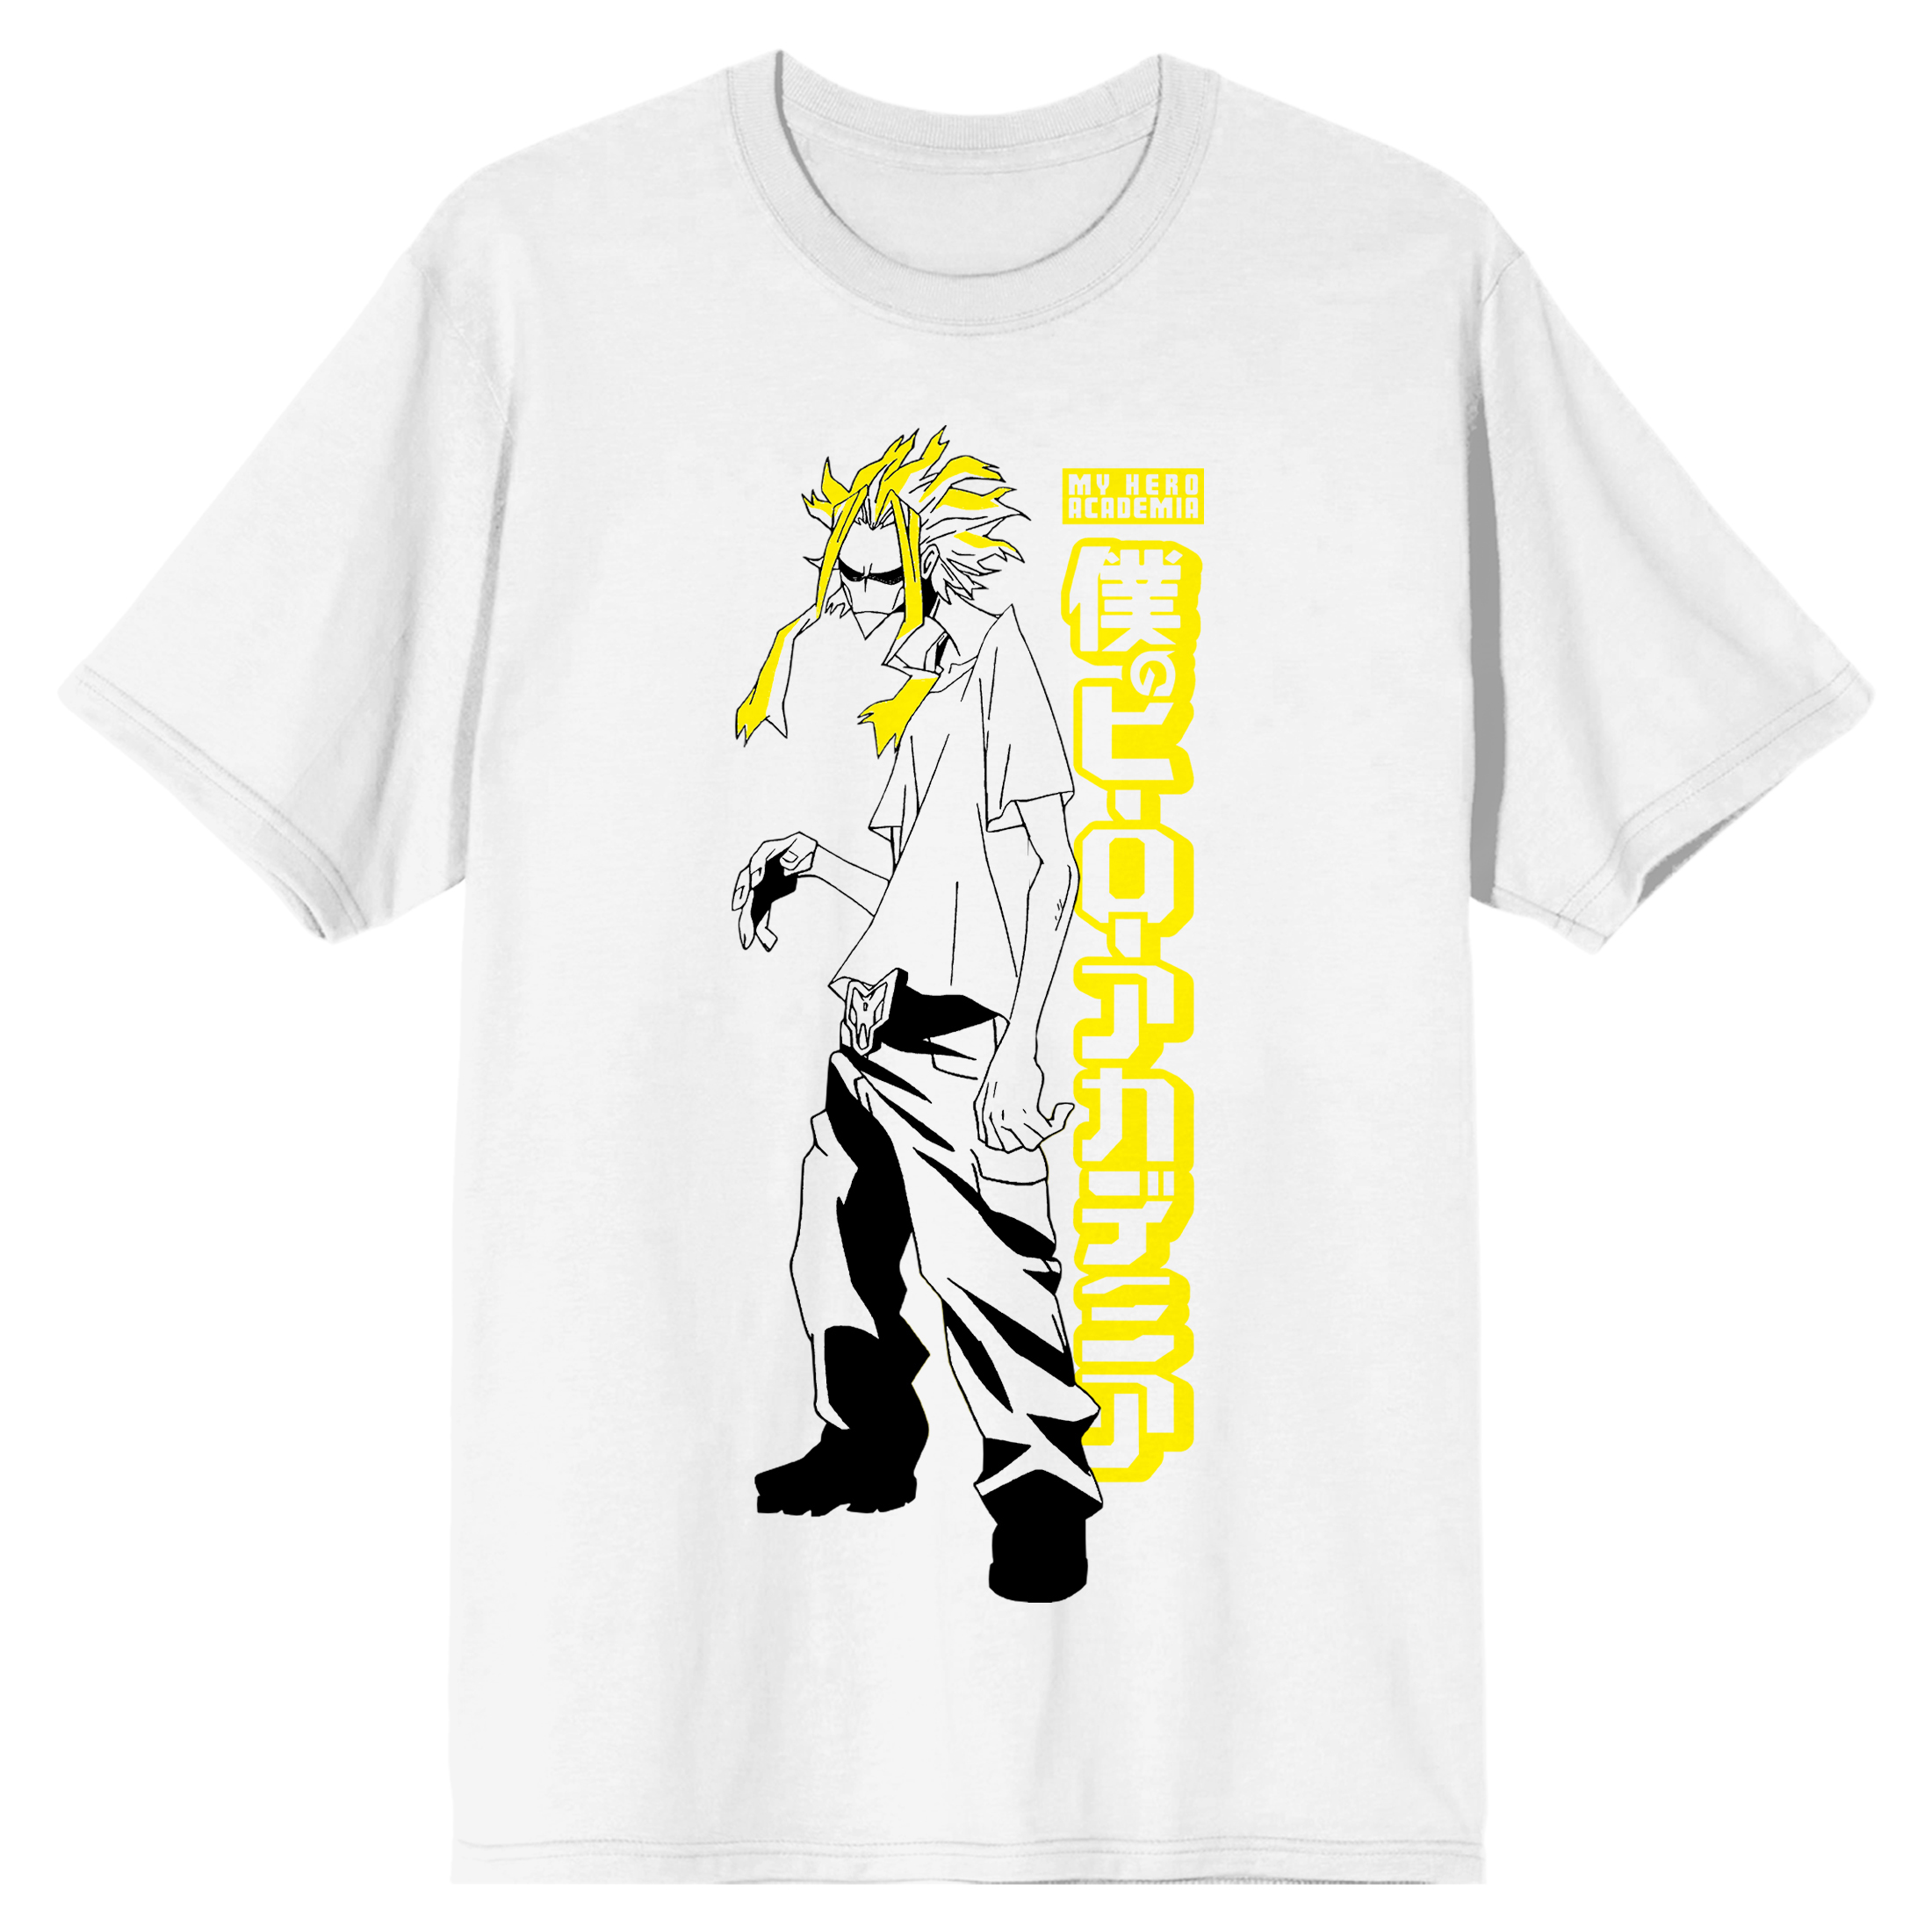 MHA My Hero Academia Toshinori Yagi All Might White T-Shirt Tee Shirt-Large - image 3 of 4